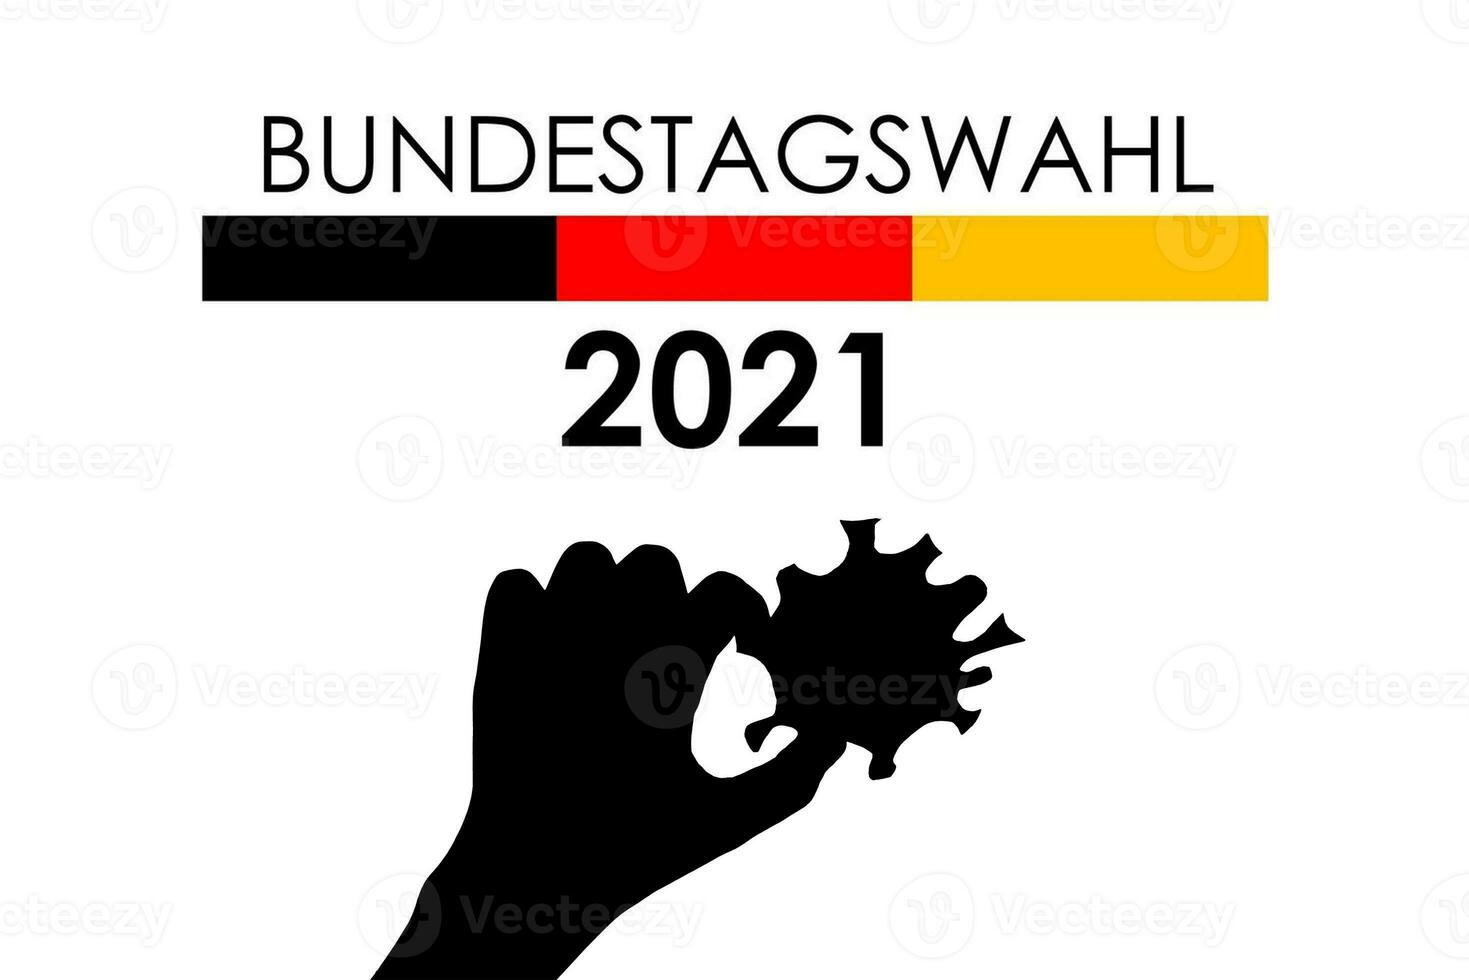 Bundestagswahl 2021. elección en alemán parlamento Bundestag 2021 durante covid-19 foto